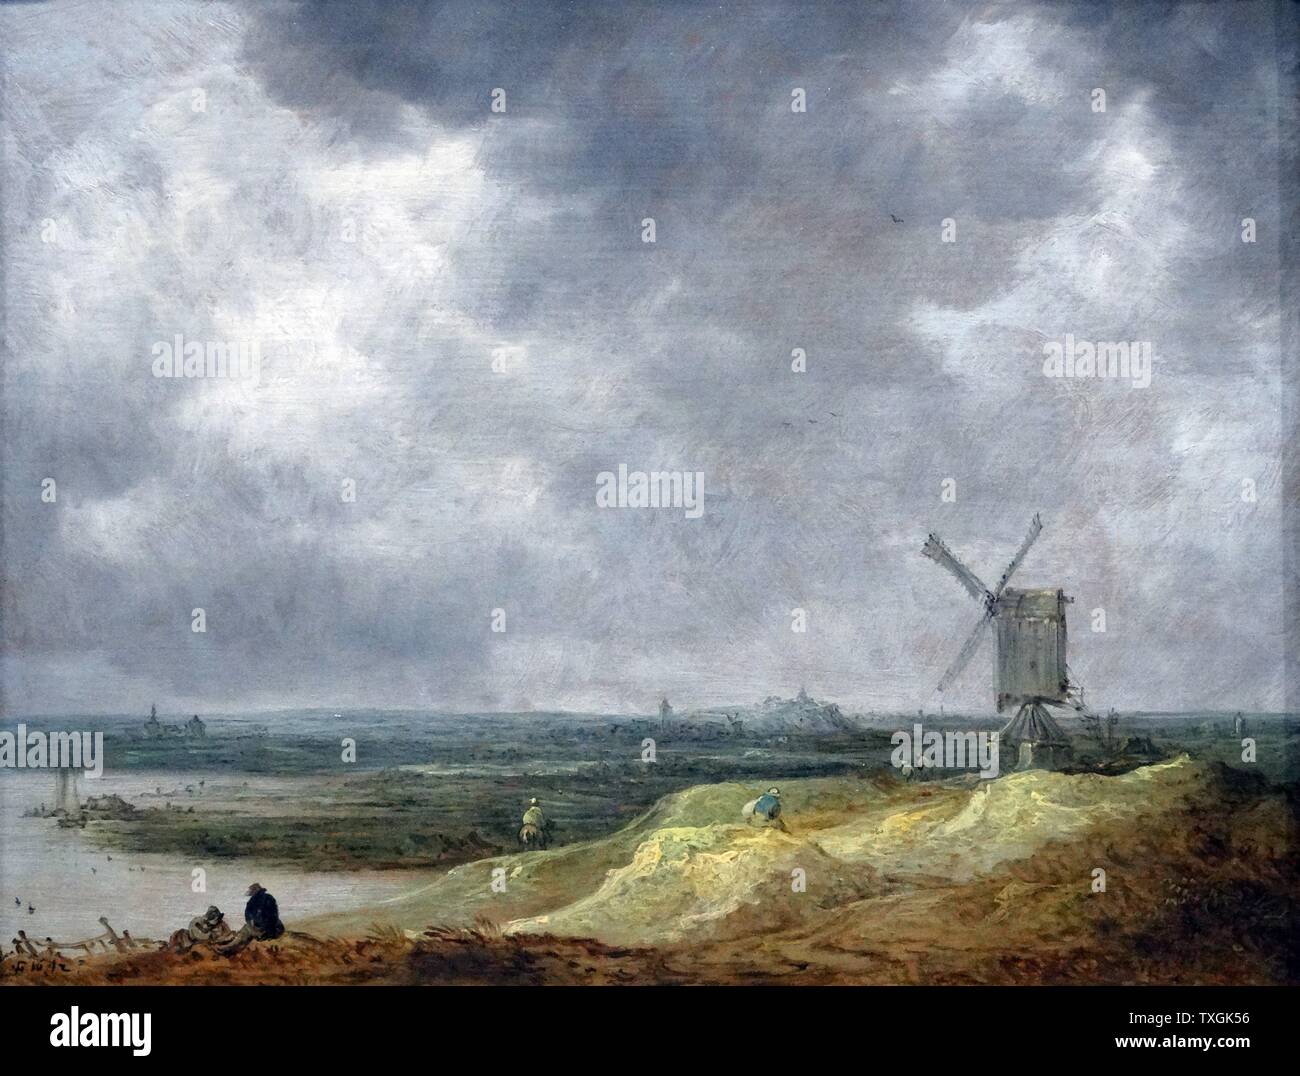 Gemälde mit dem Titel "Einer Windmühle an einem Fluss" von Jan van Goyen (1596-1656) ein niederländischer Landschaftsmaler. Vom 17. Jahrhundert Stockfoto